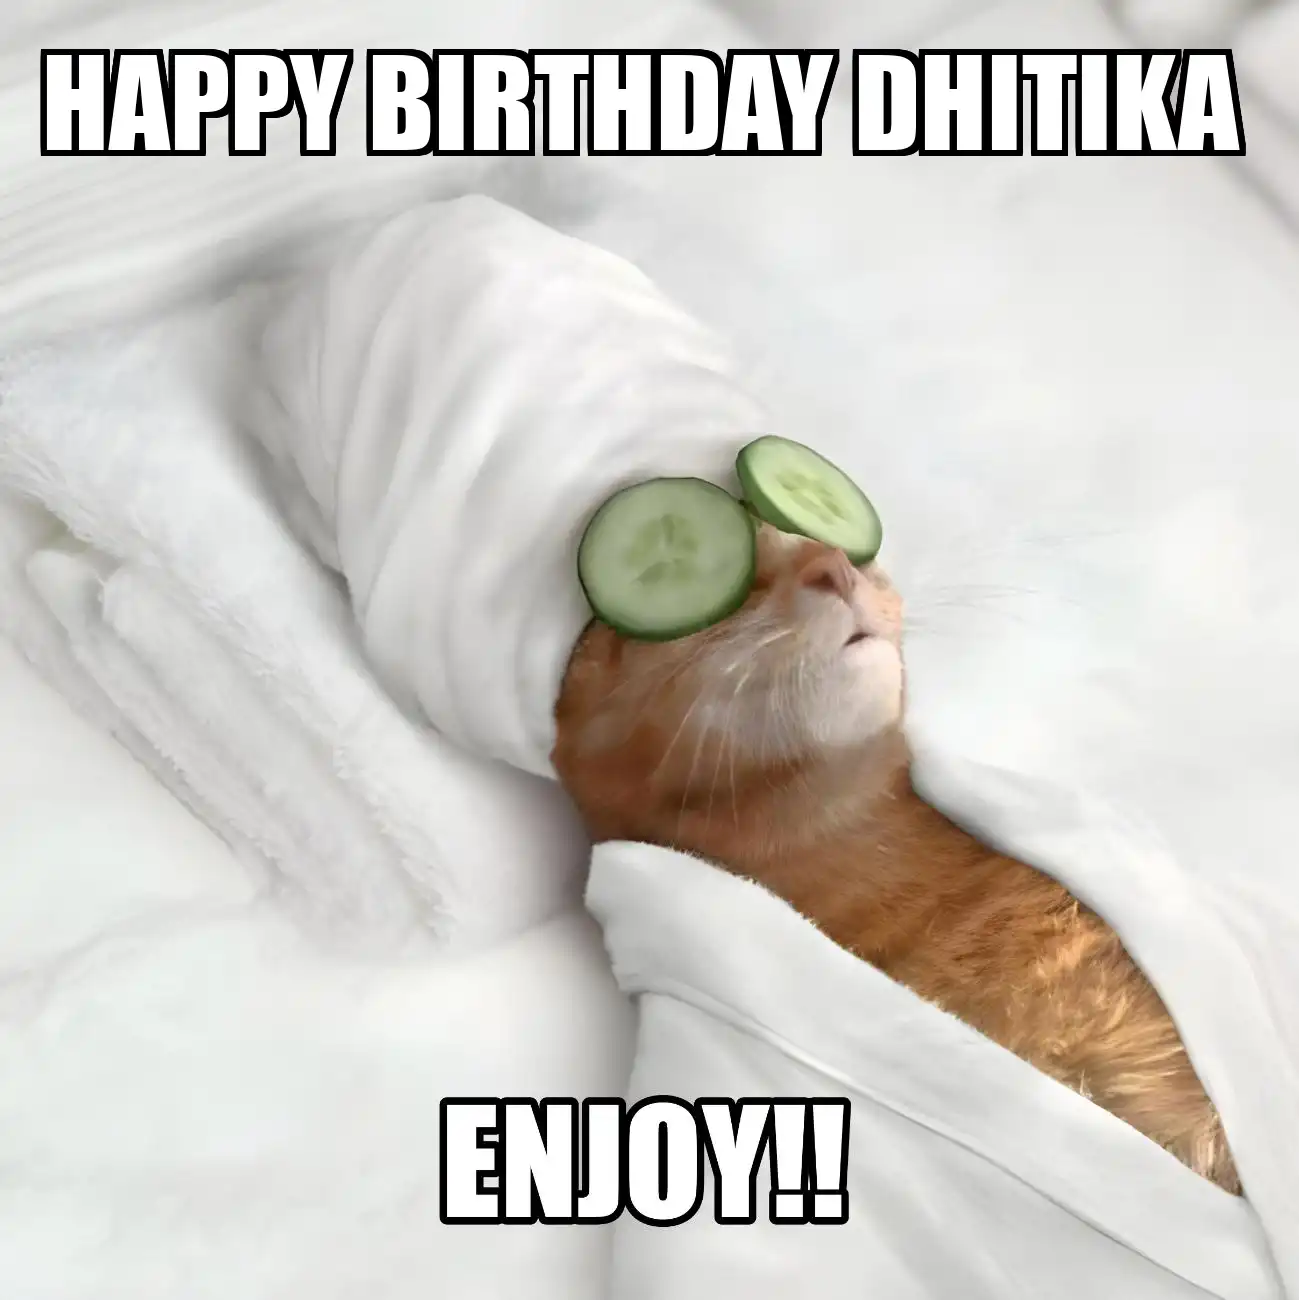 Happy Birthday Dhitika Enjoy Cat Meme